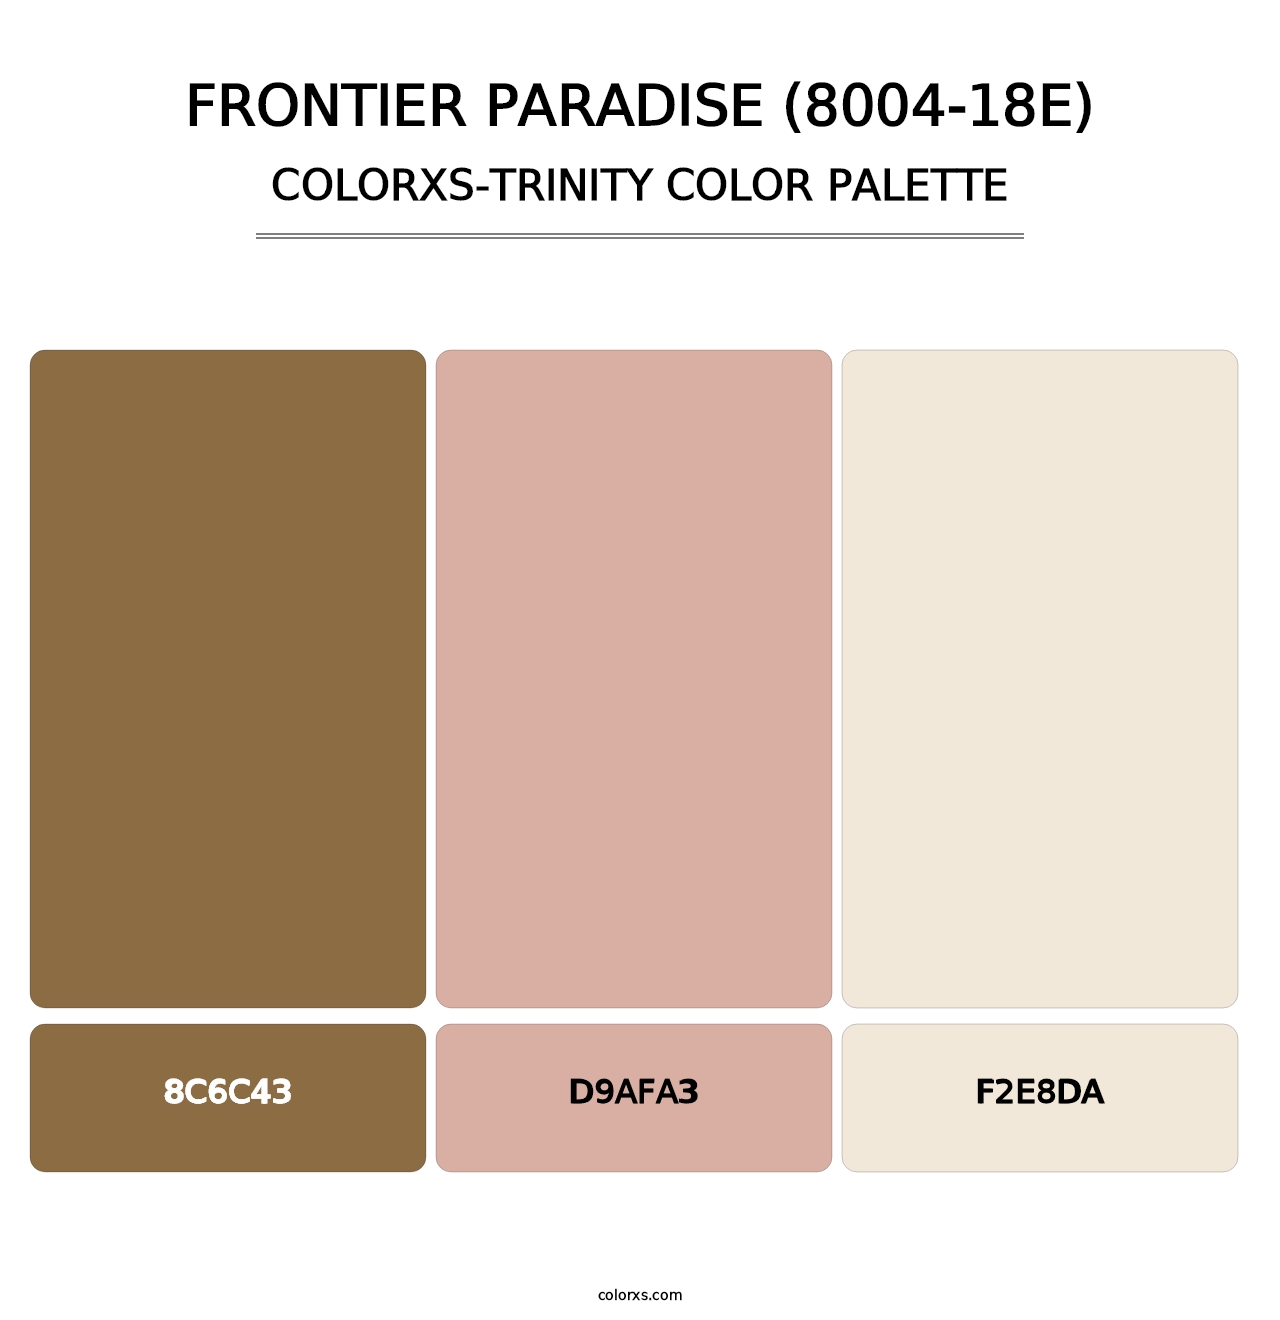 Frontier Paradise (8004-18E) - Colorxs Trinity Palette